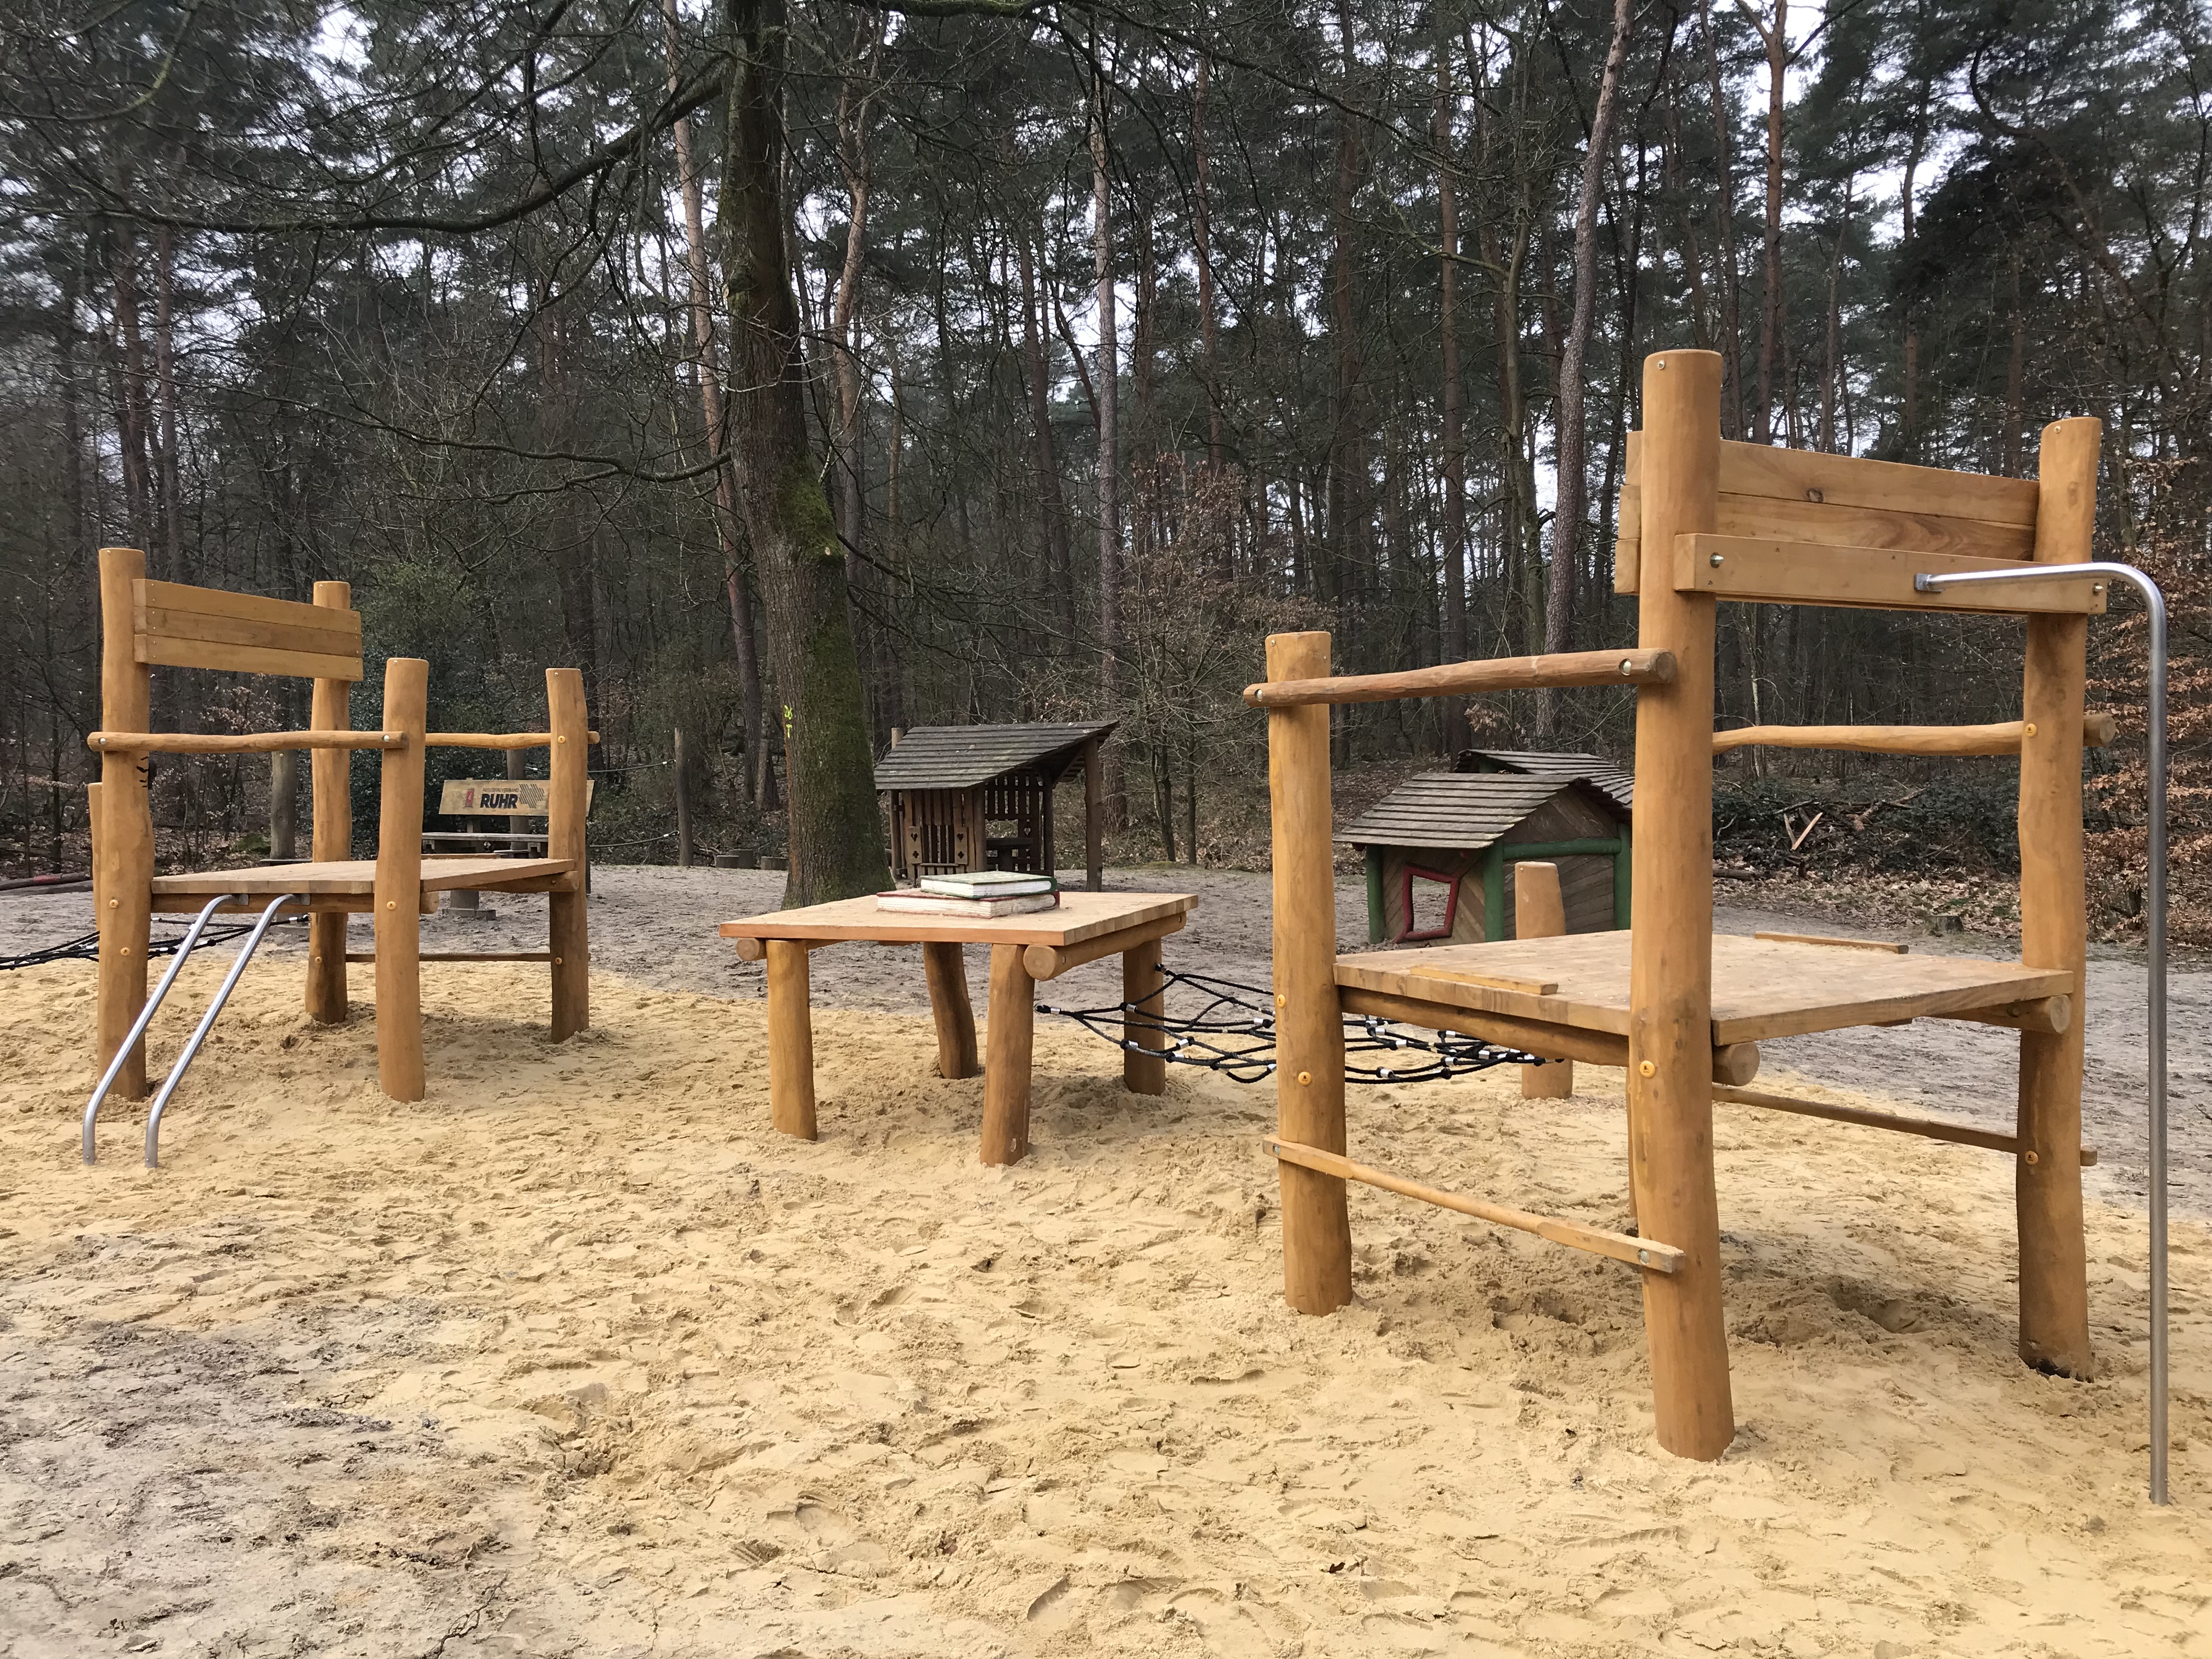 Riesige Holzstühle auf einem Spielplatz.